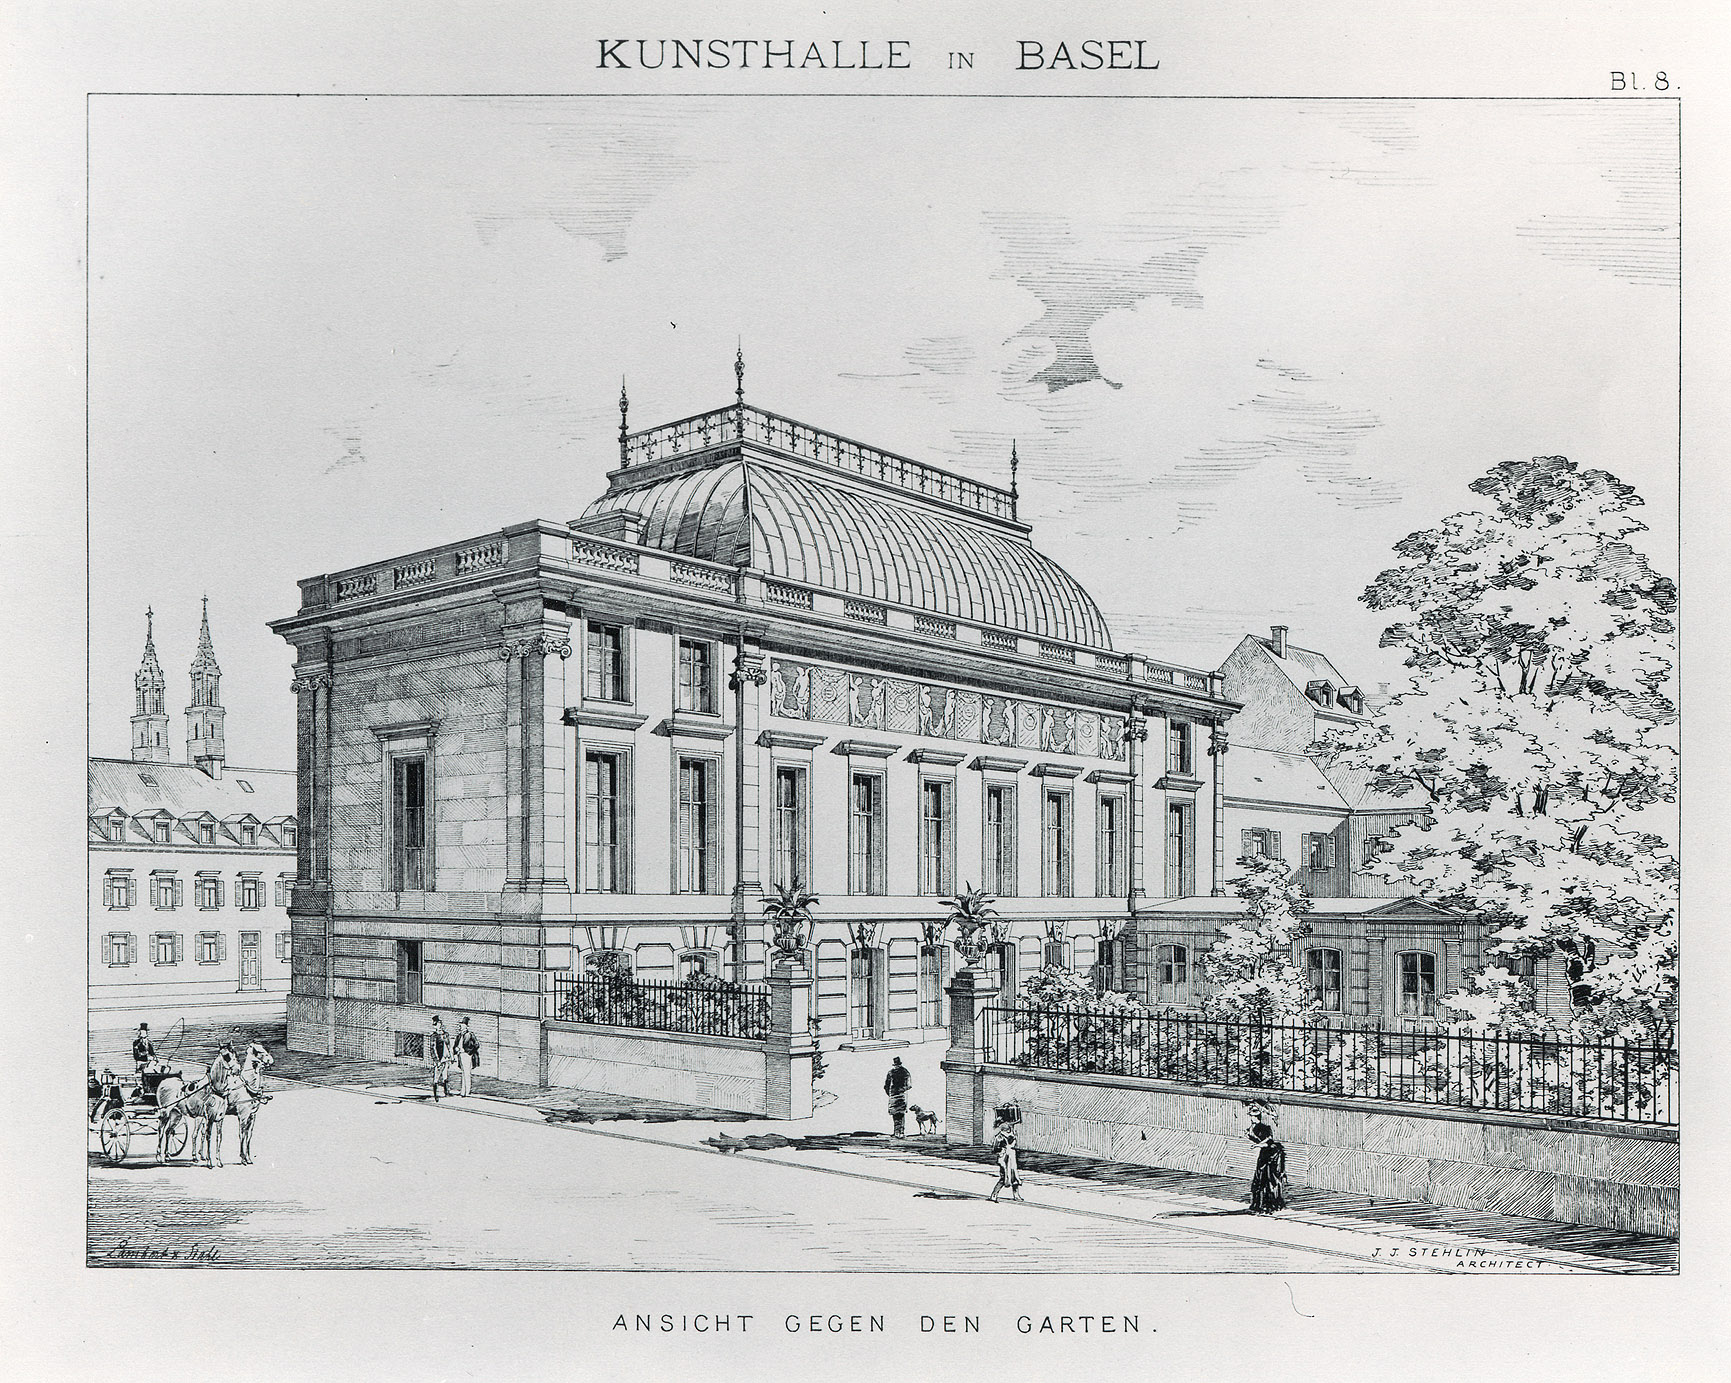 Die Gartenfassade der Kunsthalle nach einem Stich, um 1892.